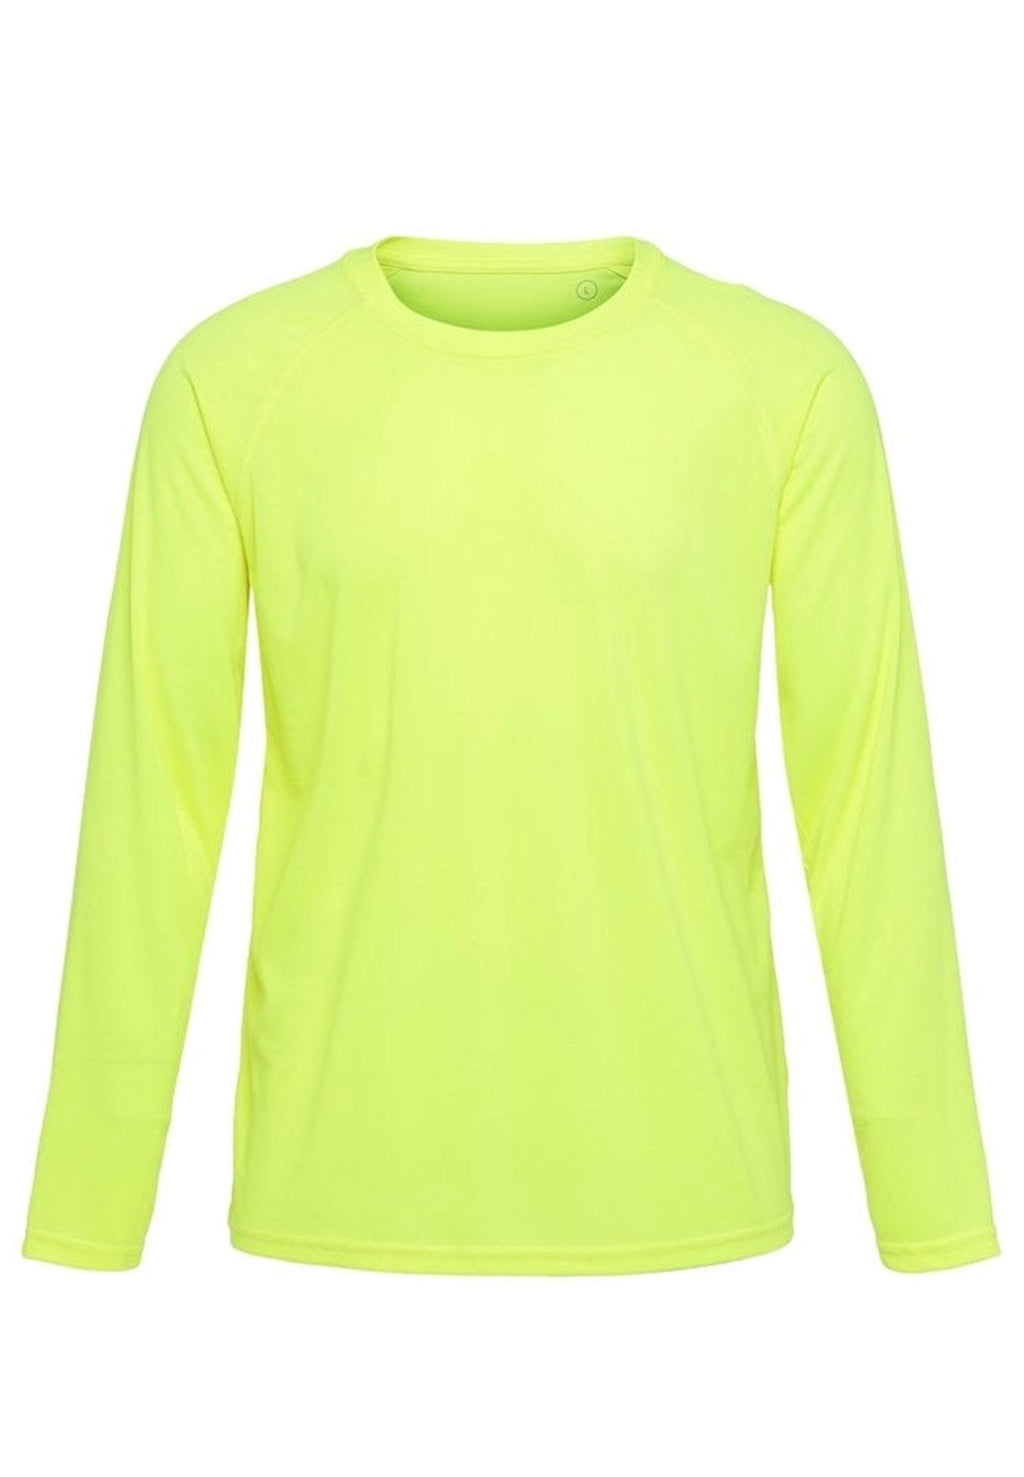 T-shirt d'entraînement à manches longues - jaune néon